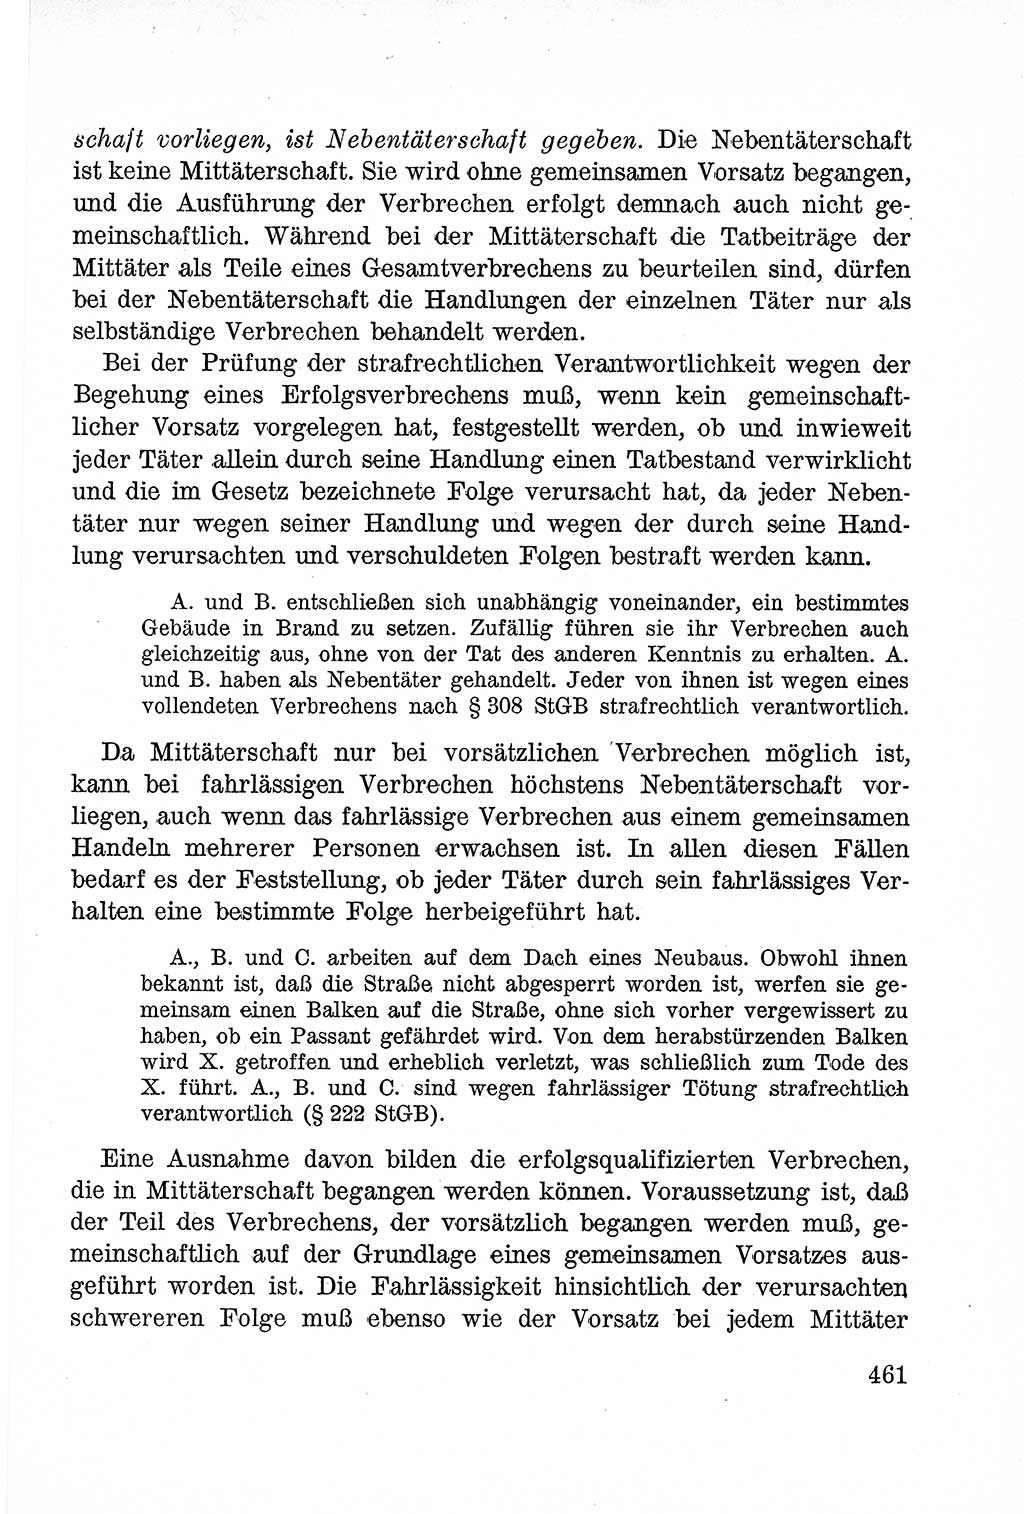 Lehrbuch des Strafrechts der Deutschen Demokratischen Republik (DDR), Allgemeiner Teil 1957, Seite 461 (Lb. Strafr. DDR AT 1957, S. 461)